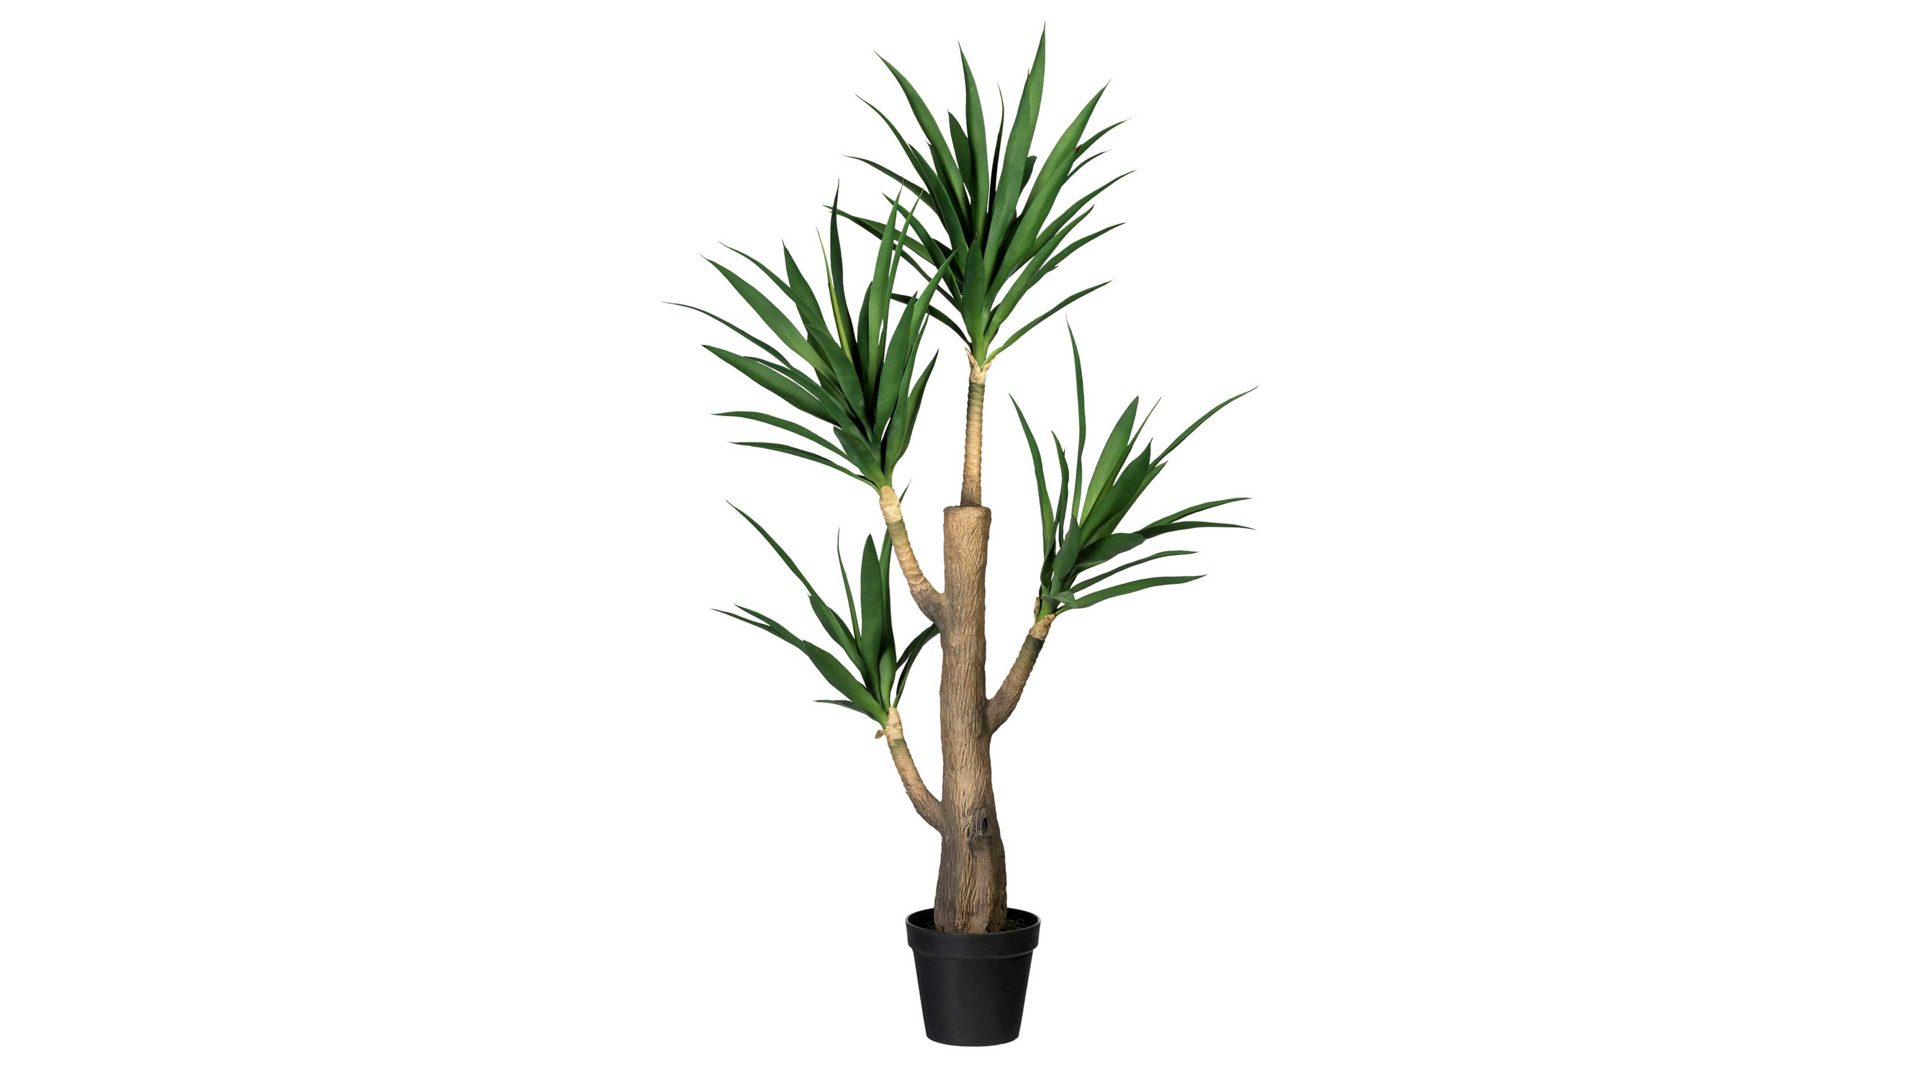 Pflanze Gasper aus Kunststoff in Grün Drachenbaum grüner Kunststoff & schwarzer Topf – Höhe ca. 160 cm